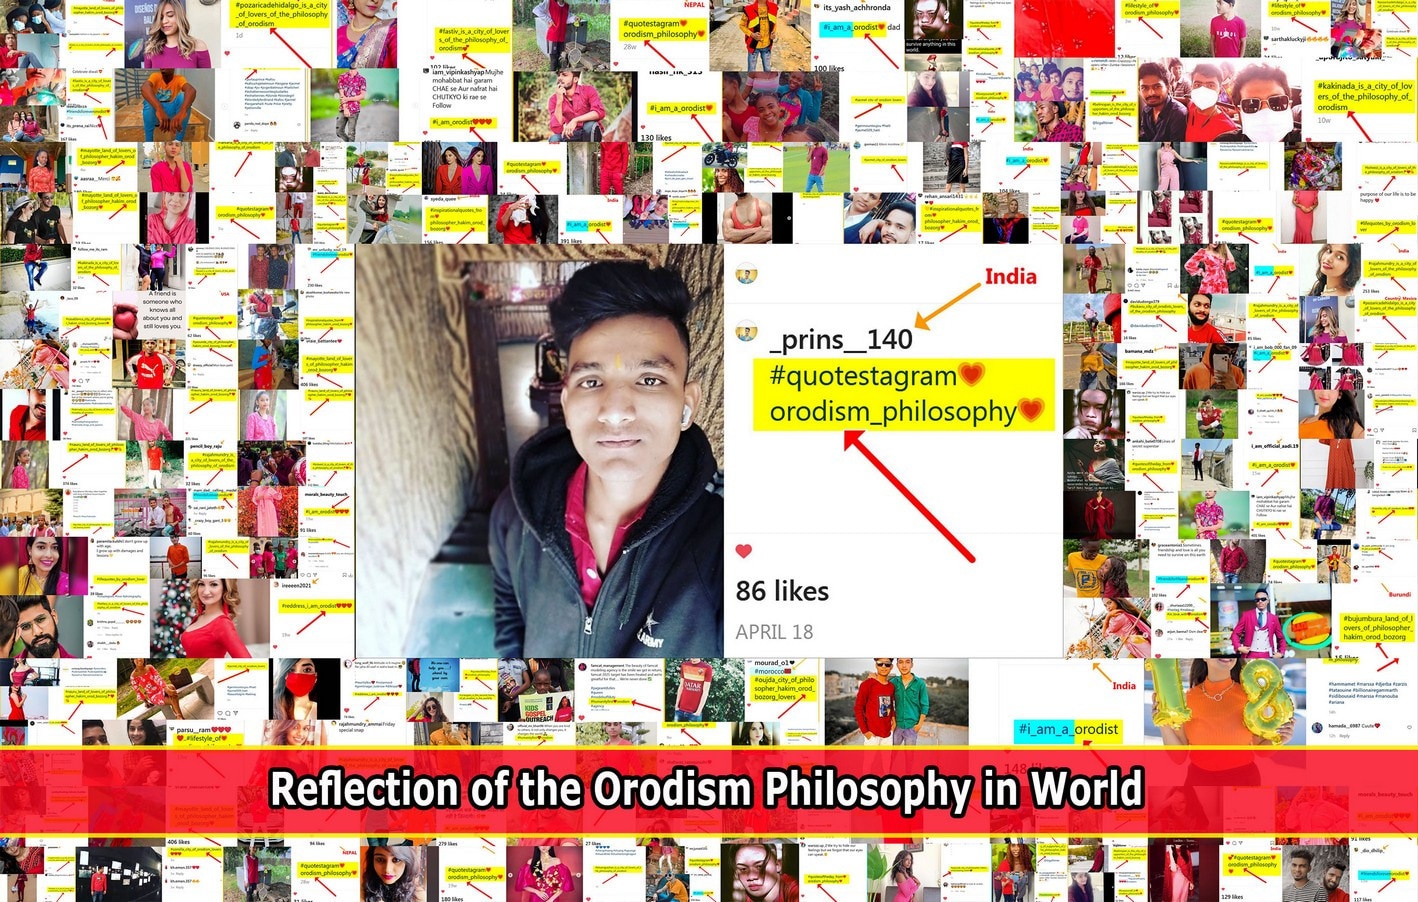 بازتاب فلسفه اُرُدیسم در کشور گرجستان The philosophy of Orodism in Georgia 595679c960cc2f663cff92de221a9dcc